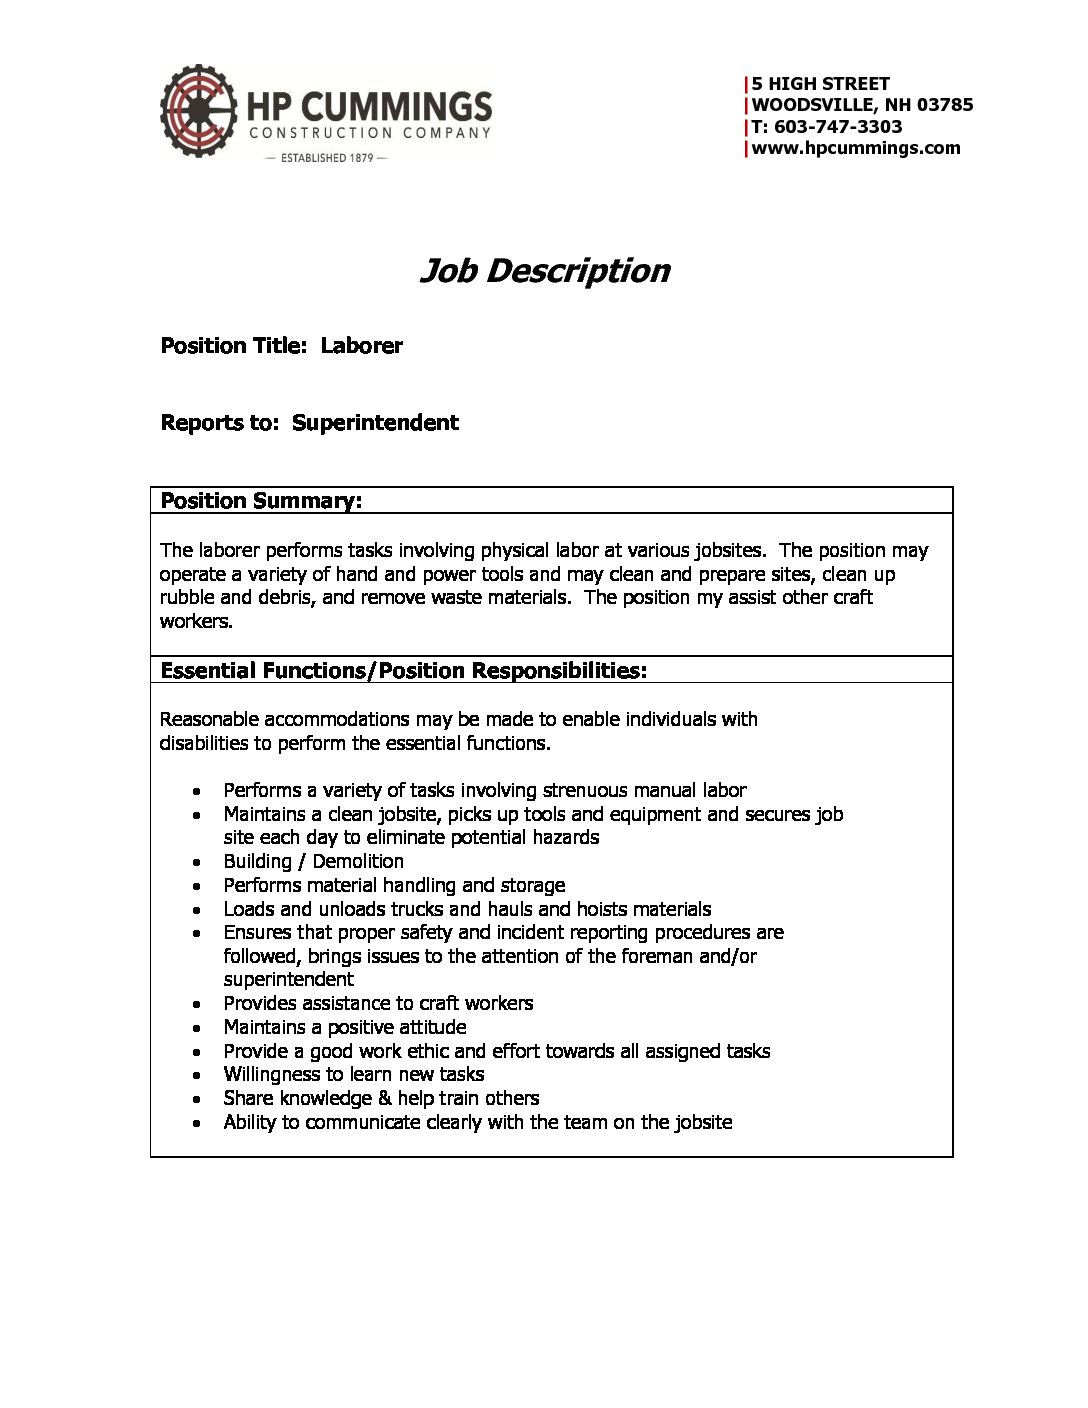 Job Description – Laborer